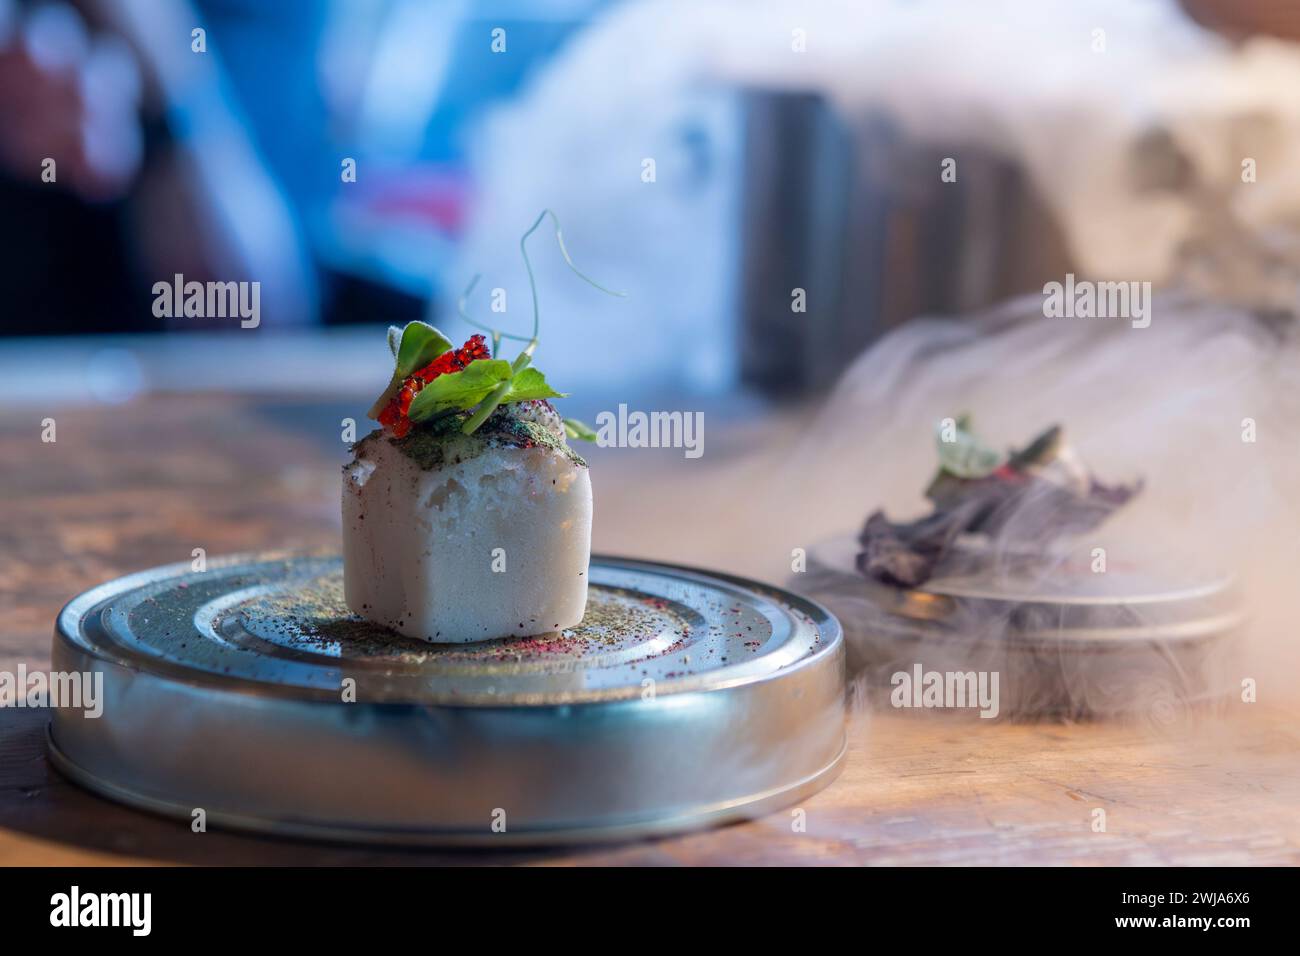 Uno splendido piatto fusion di un ristorante stellato Michelin a Zermatt mette in mostra l'eccellenza culinaria con una presentazione artistica del mare locale Foto Stock